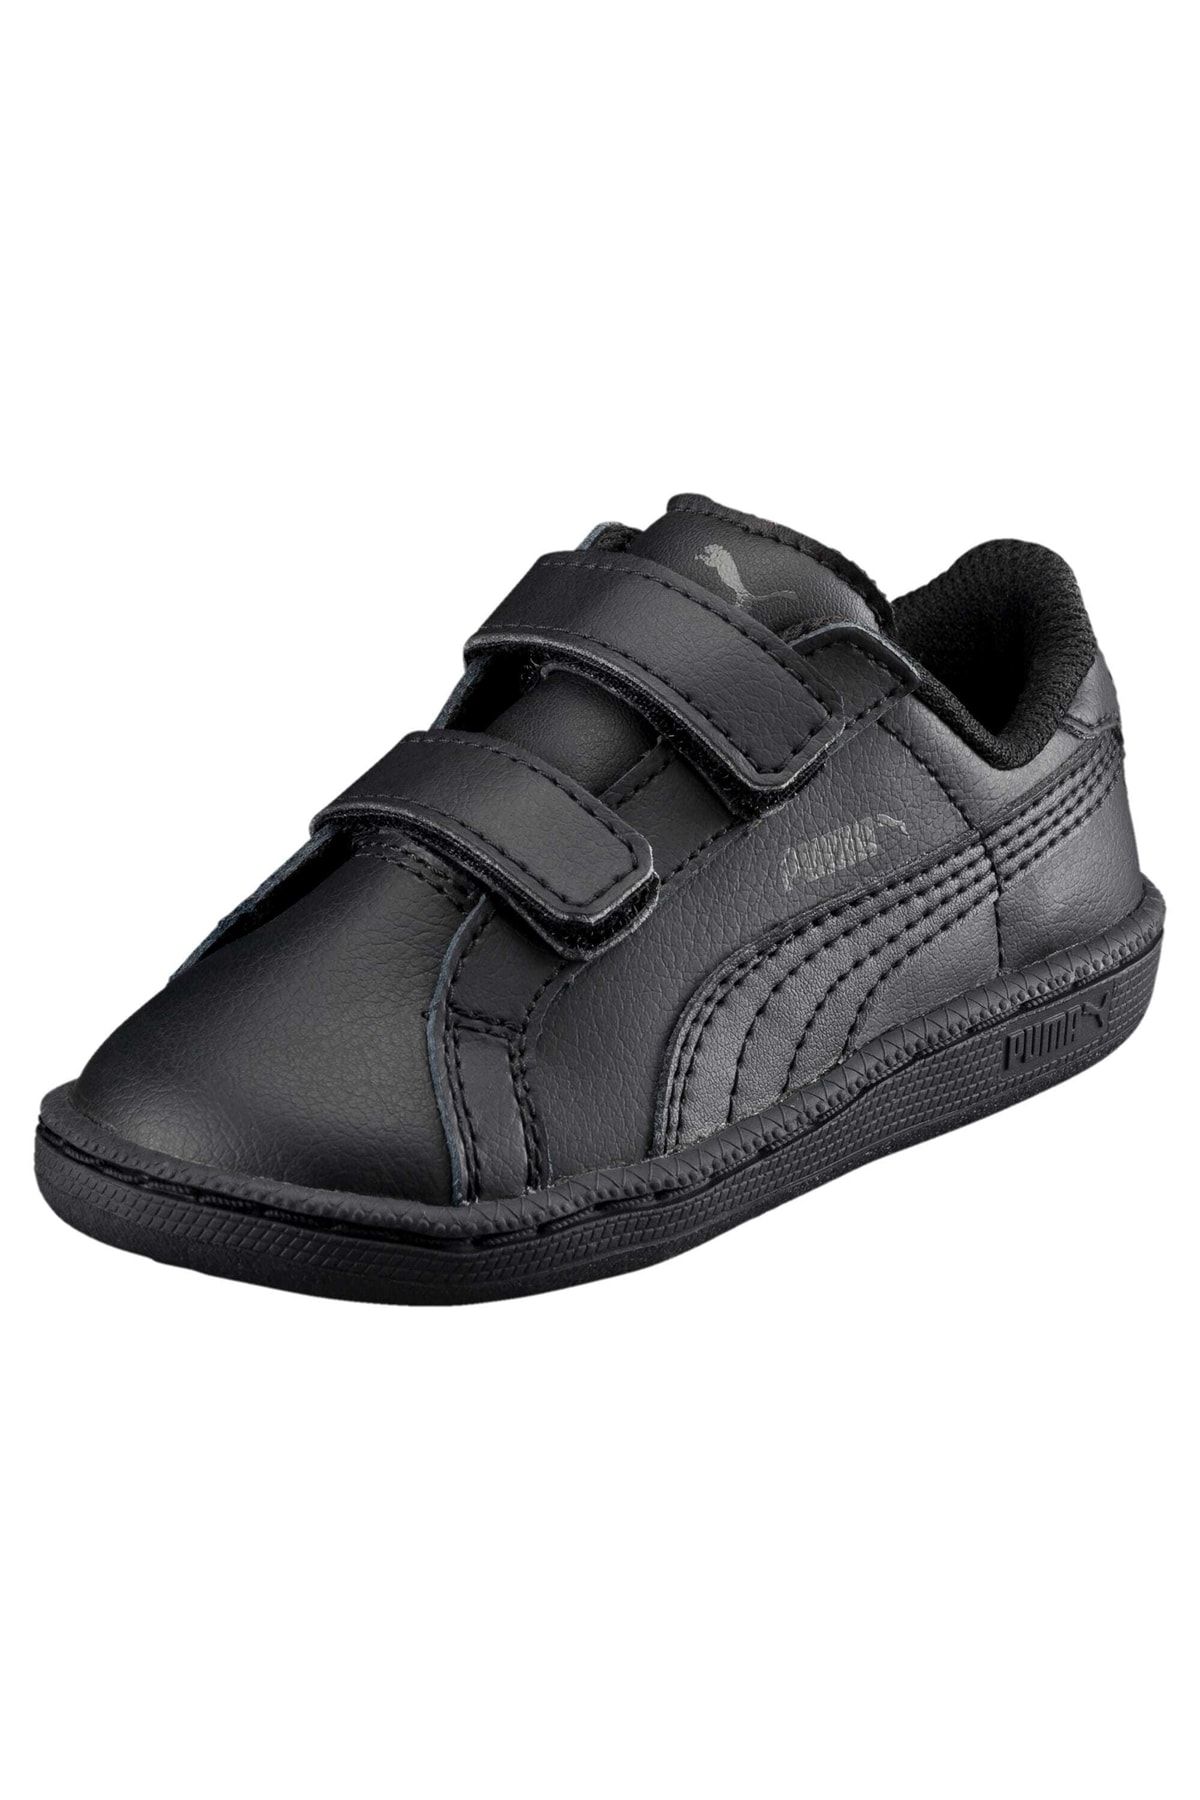 Puma Smash Leather V Kids - Trendyol Shoes